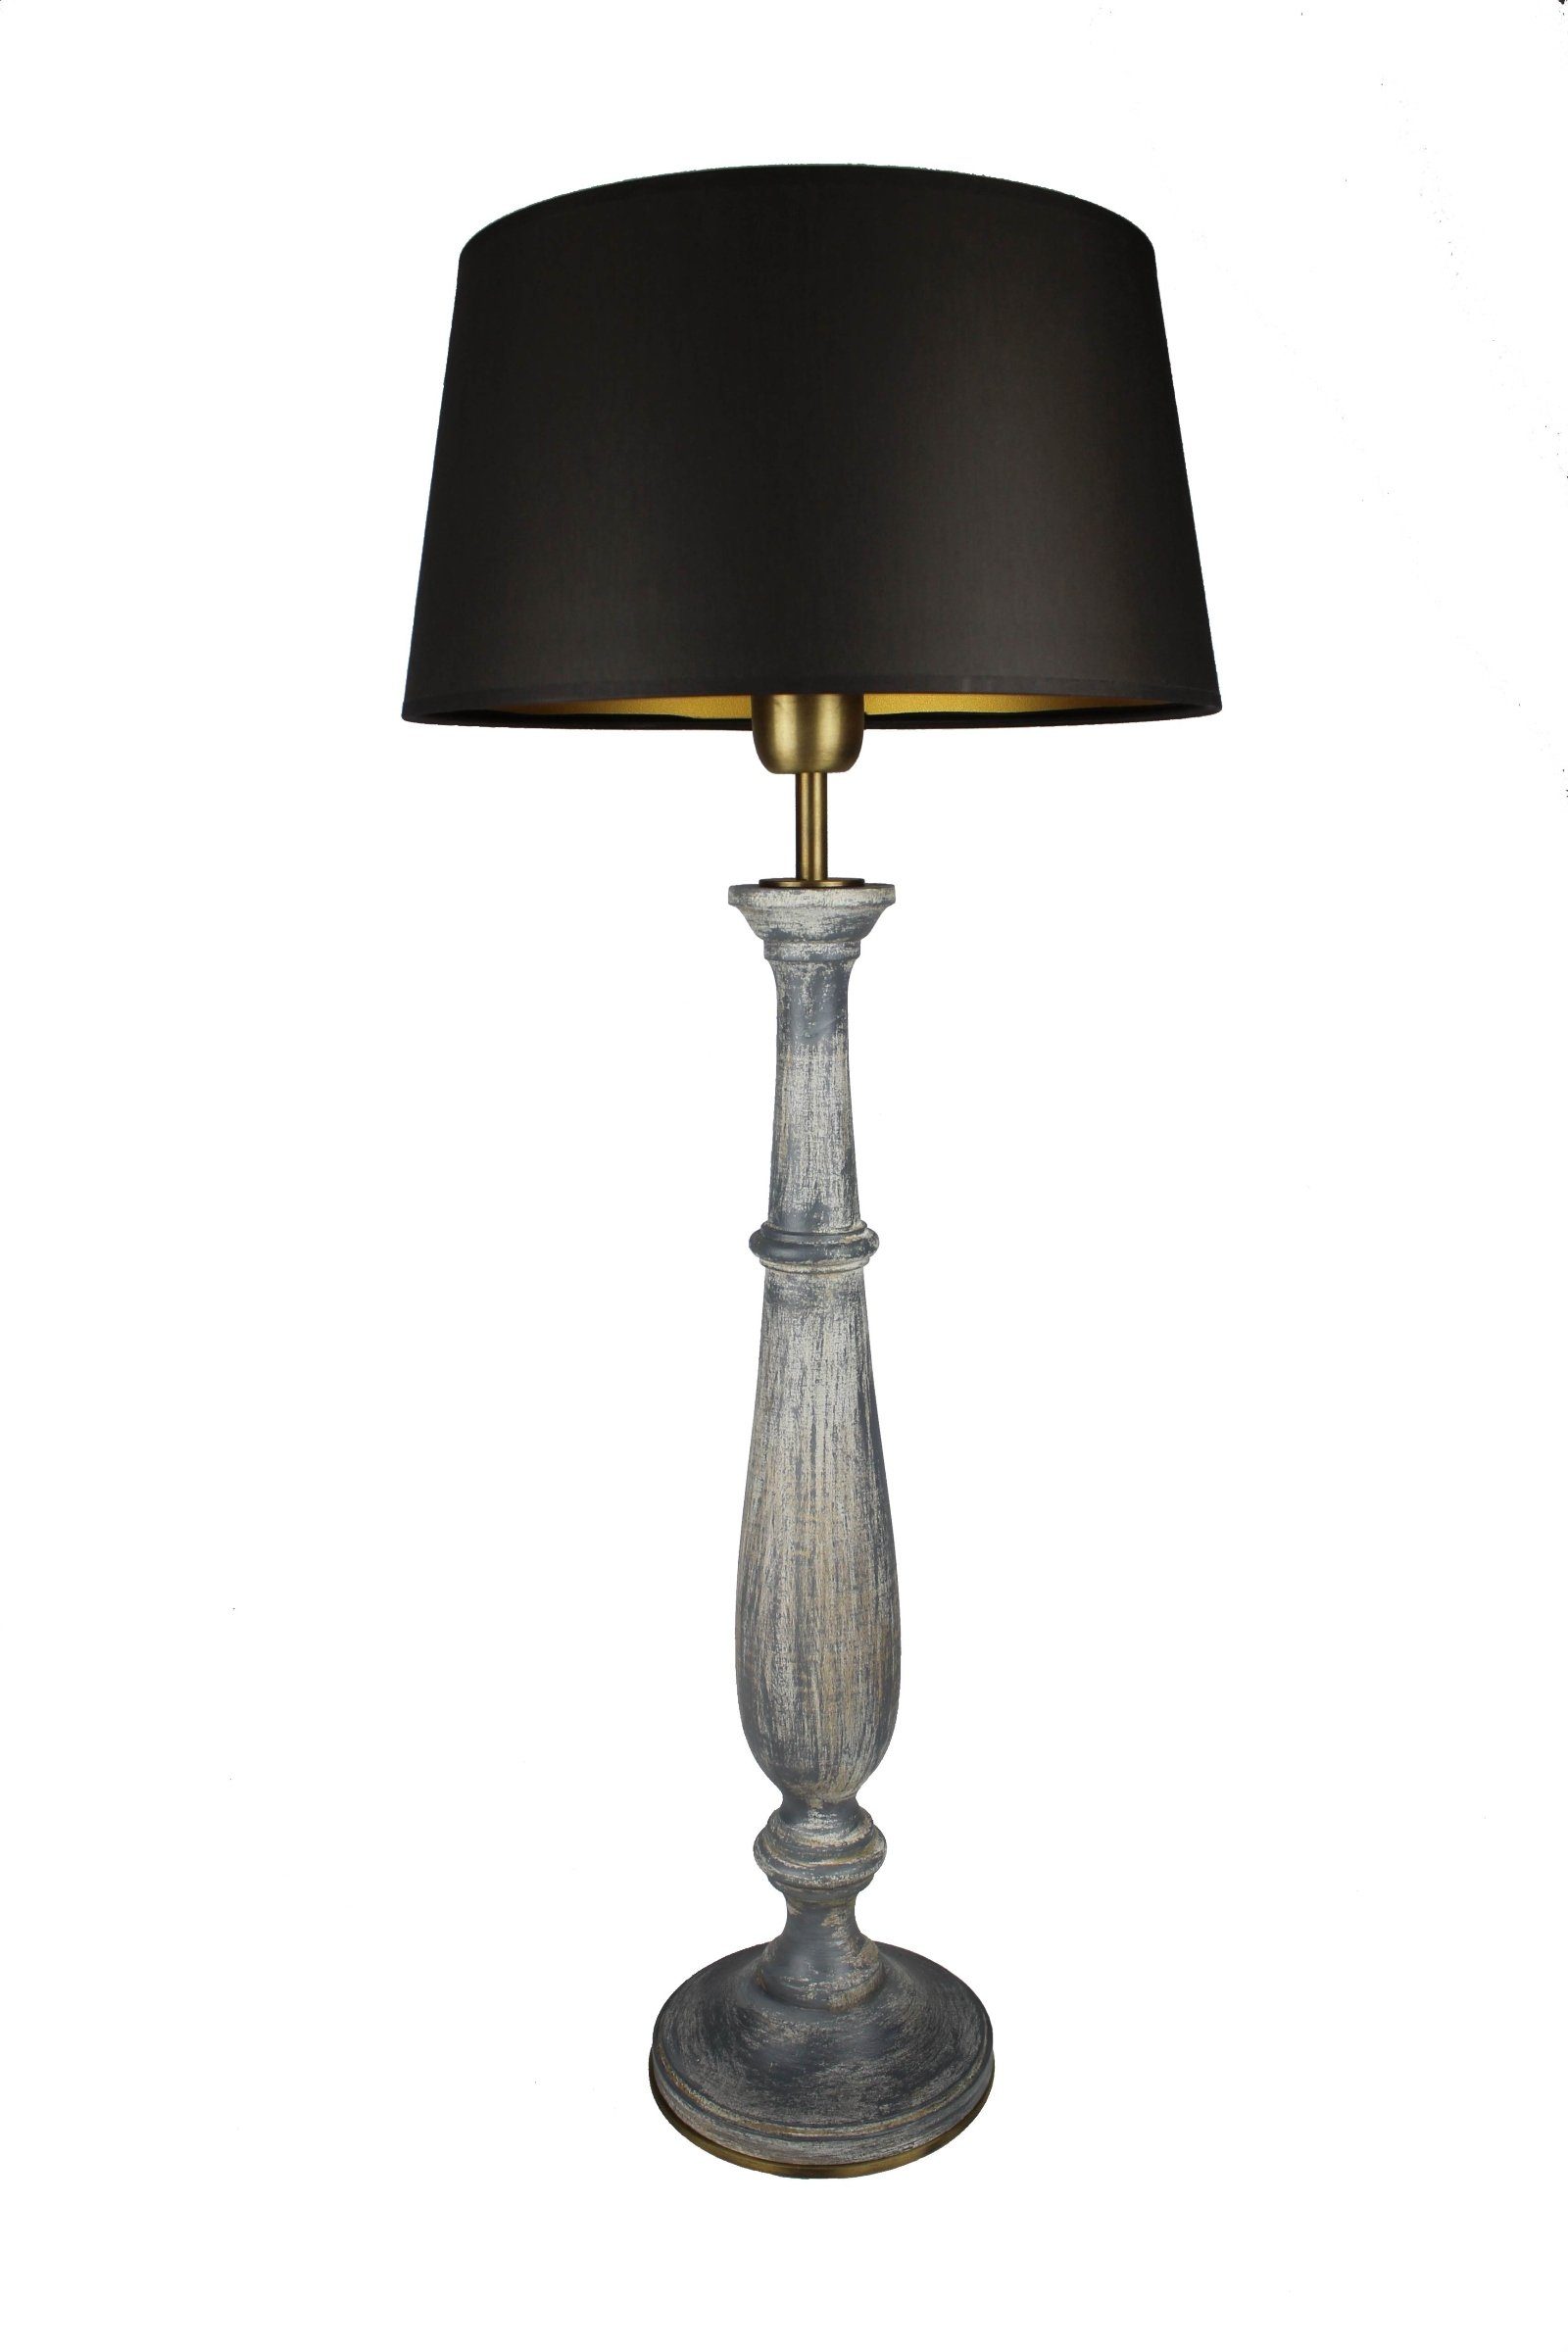 Signature Home Collection Schreibtischlampe Tischlampe Holz grau gedrechselt mit Schirm schwarz, ohne Leuchtmittel, warmweiß, handgefertigte Leuchte aus Italien | Tischlampen